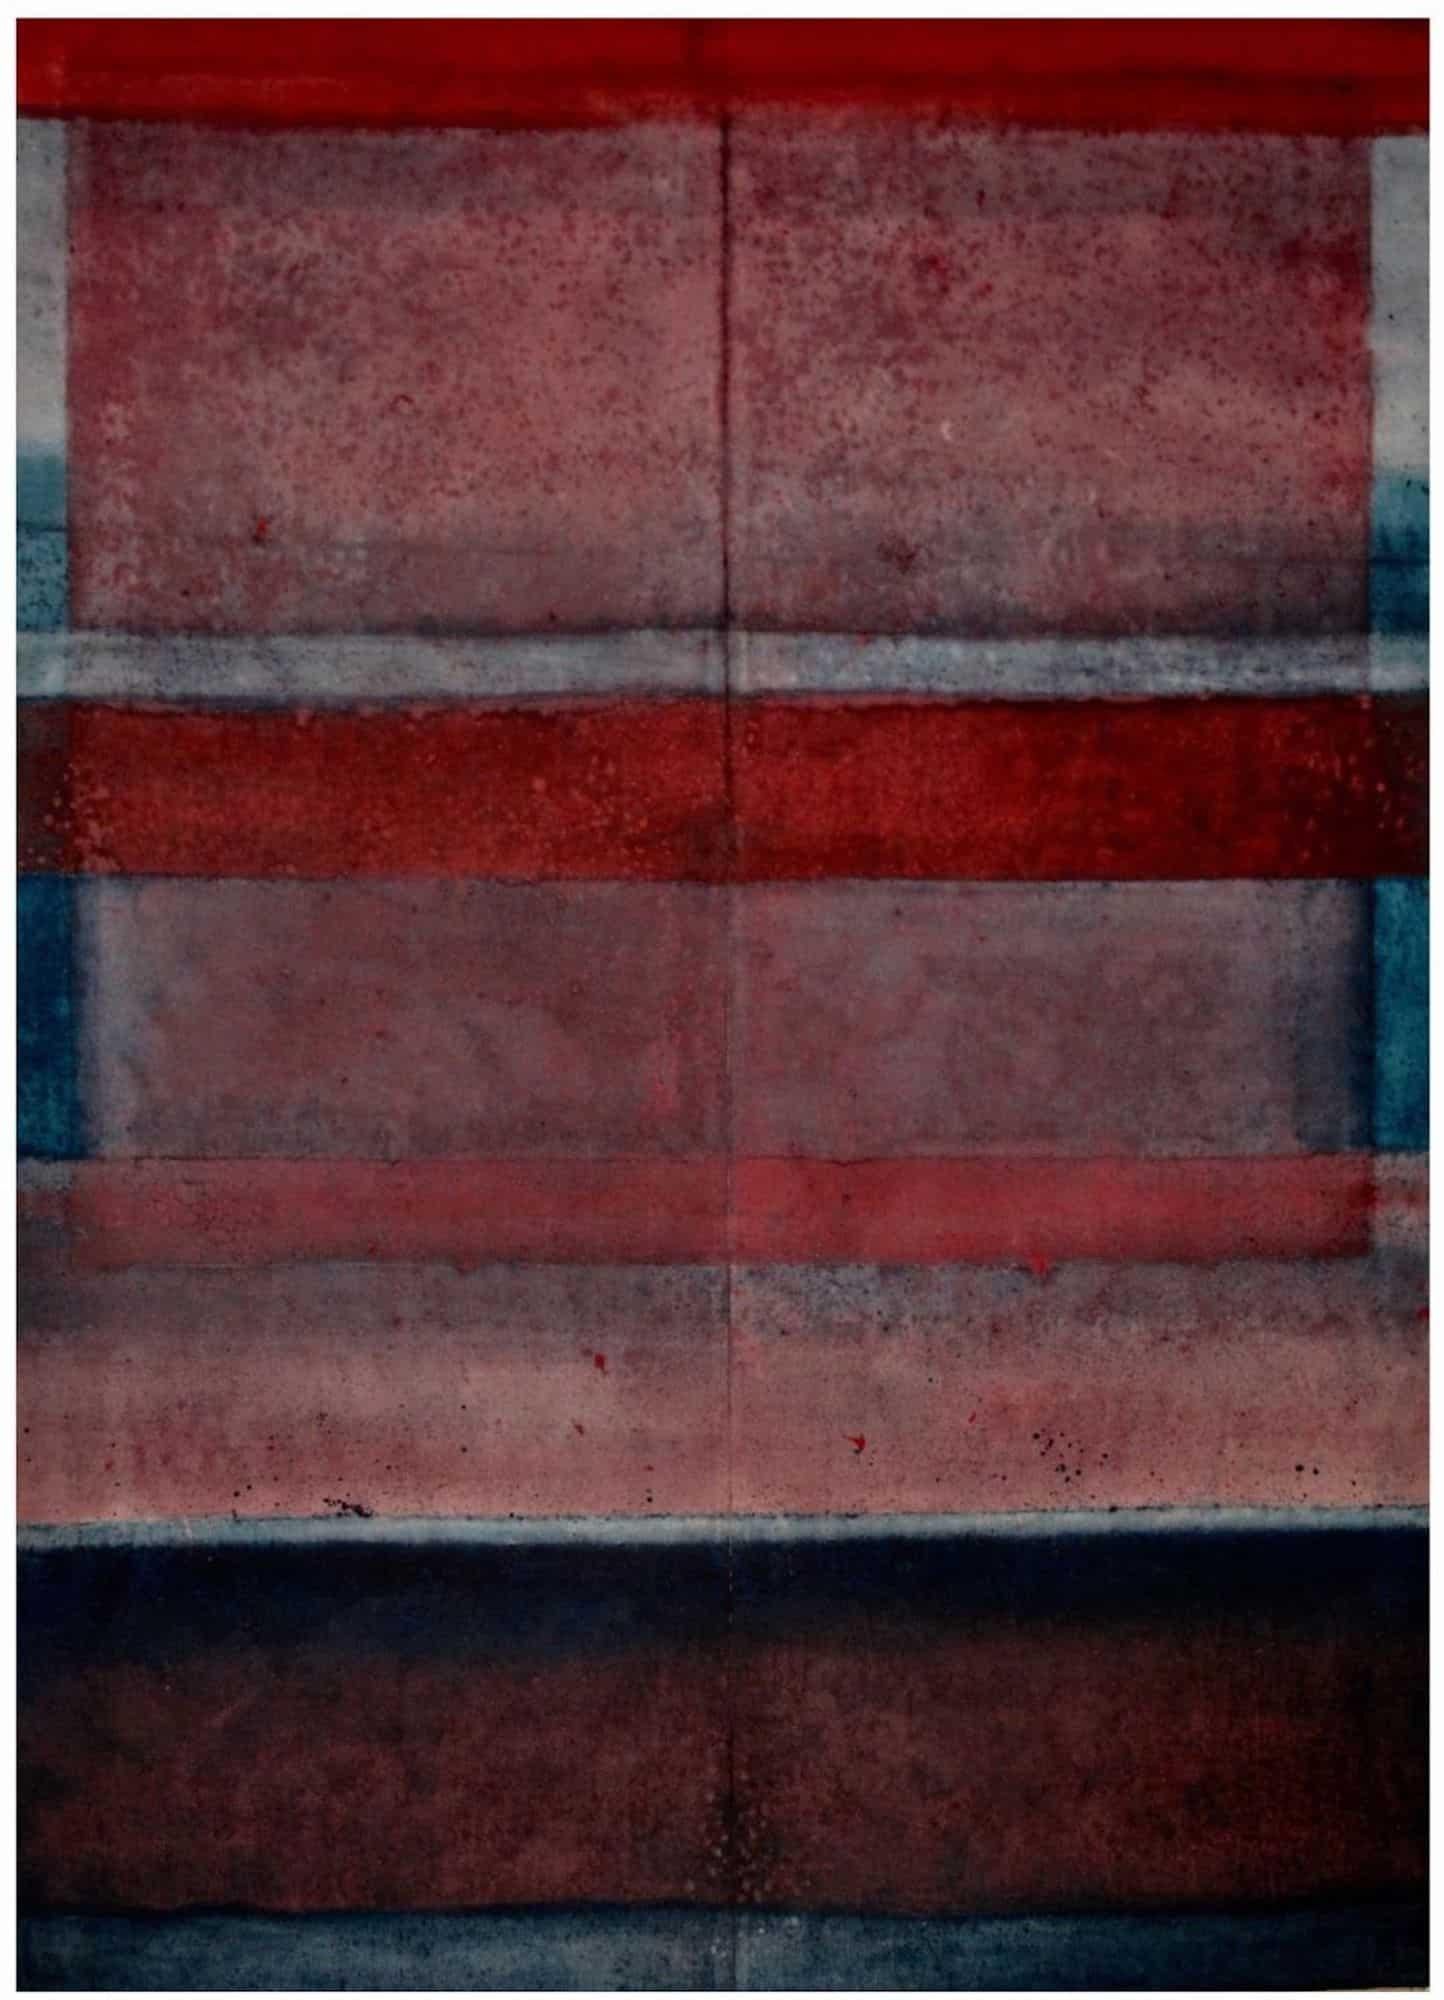 Abstract Painting Elvire Ferle - Untitled XLVI par Ferle - peinture abstraite, tons rouges, très grande taille